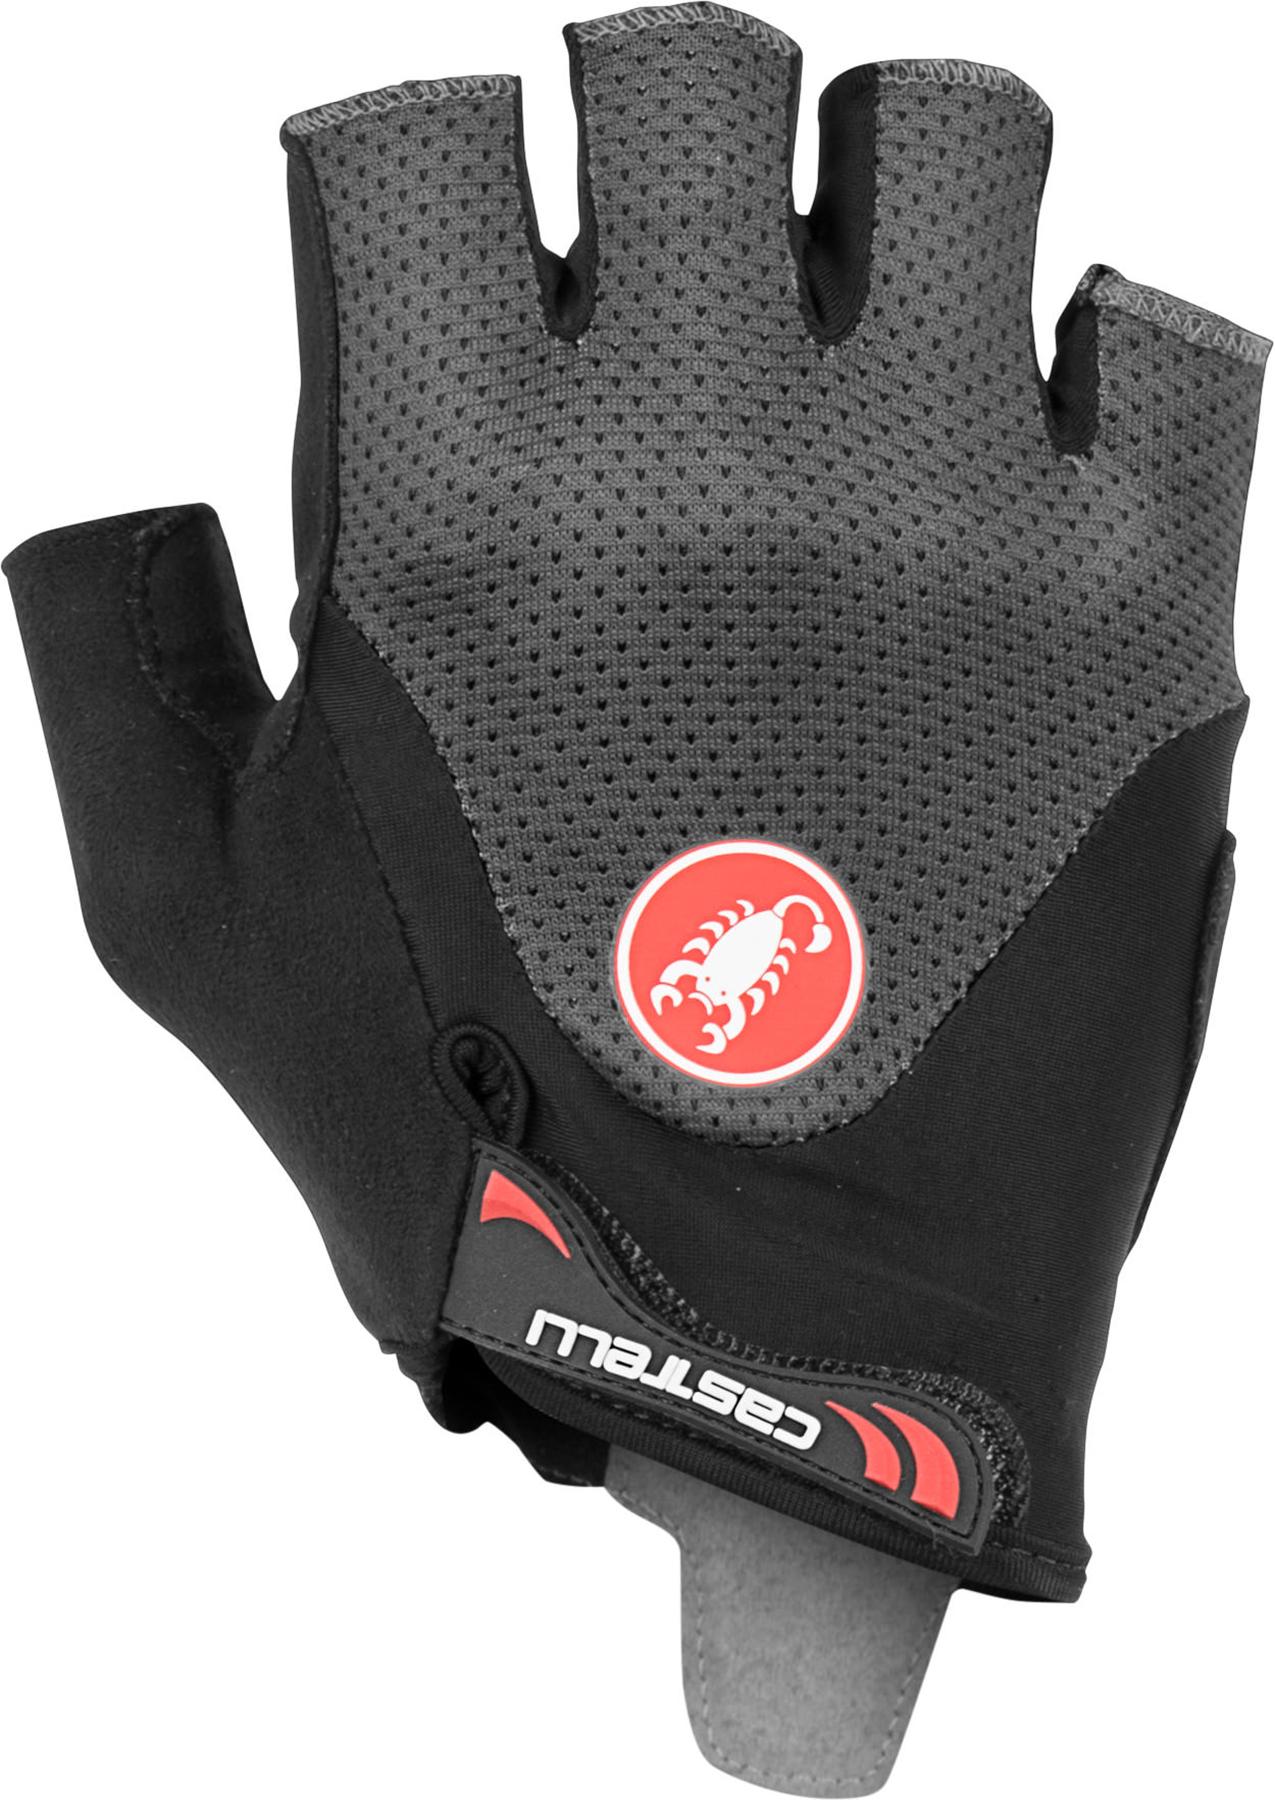 Castelli Arenberg Gel 2 Cycling Gloves - Dark Grey